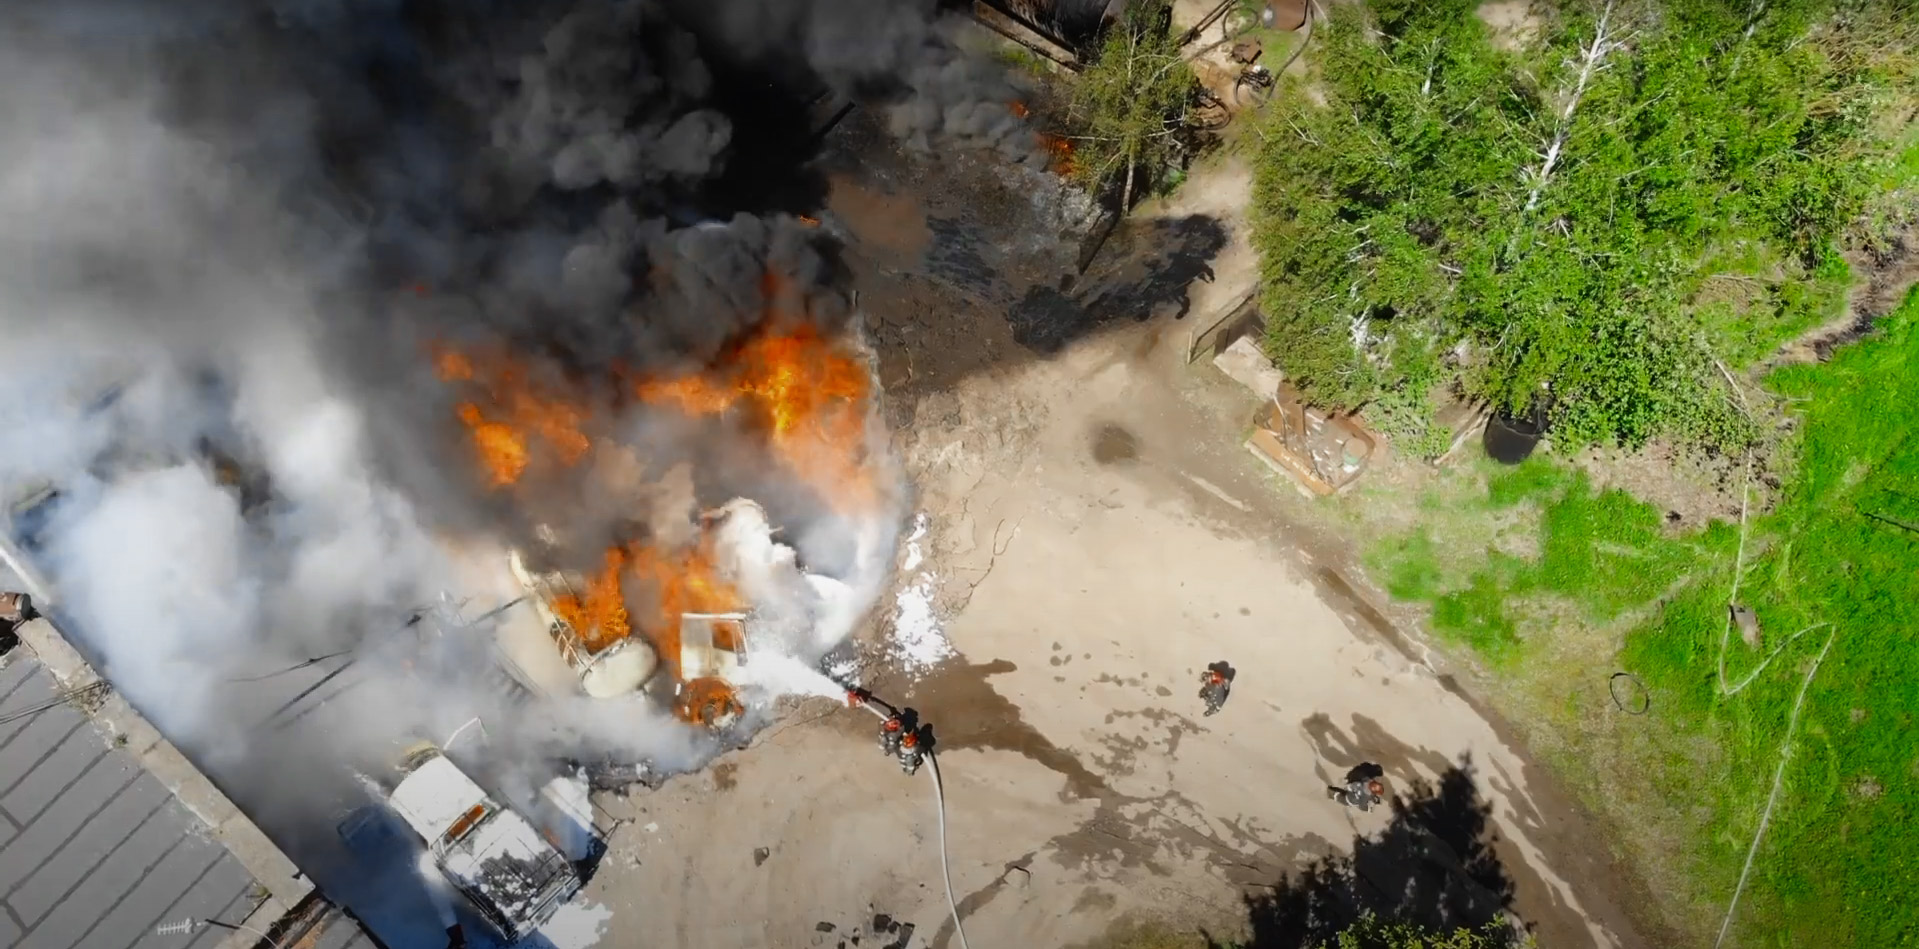 Пожар на складе нефтяной эмульсии произошел в Витебске, есть пострадавшие. Фото МЧС